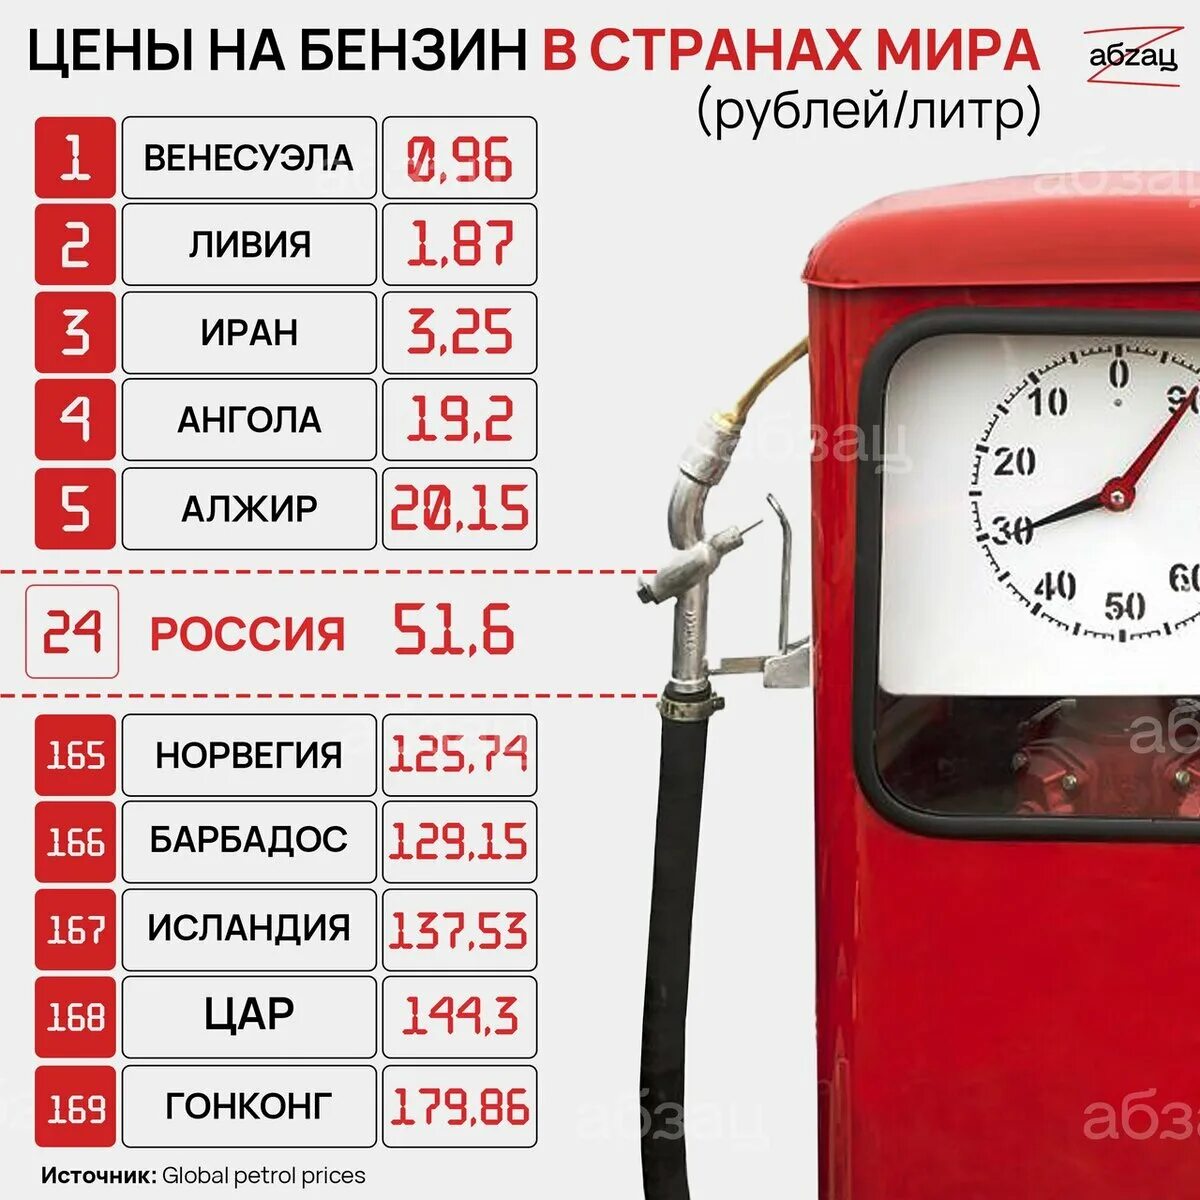 Сколько стоит 6 литров бензина. Цена бензина за 1 литр. Сколько стоит 1 литр бензина. Бензин 40 рублей за литр. Бензин в Казахстане и России.